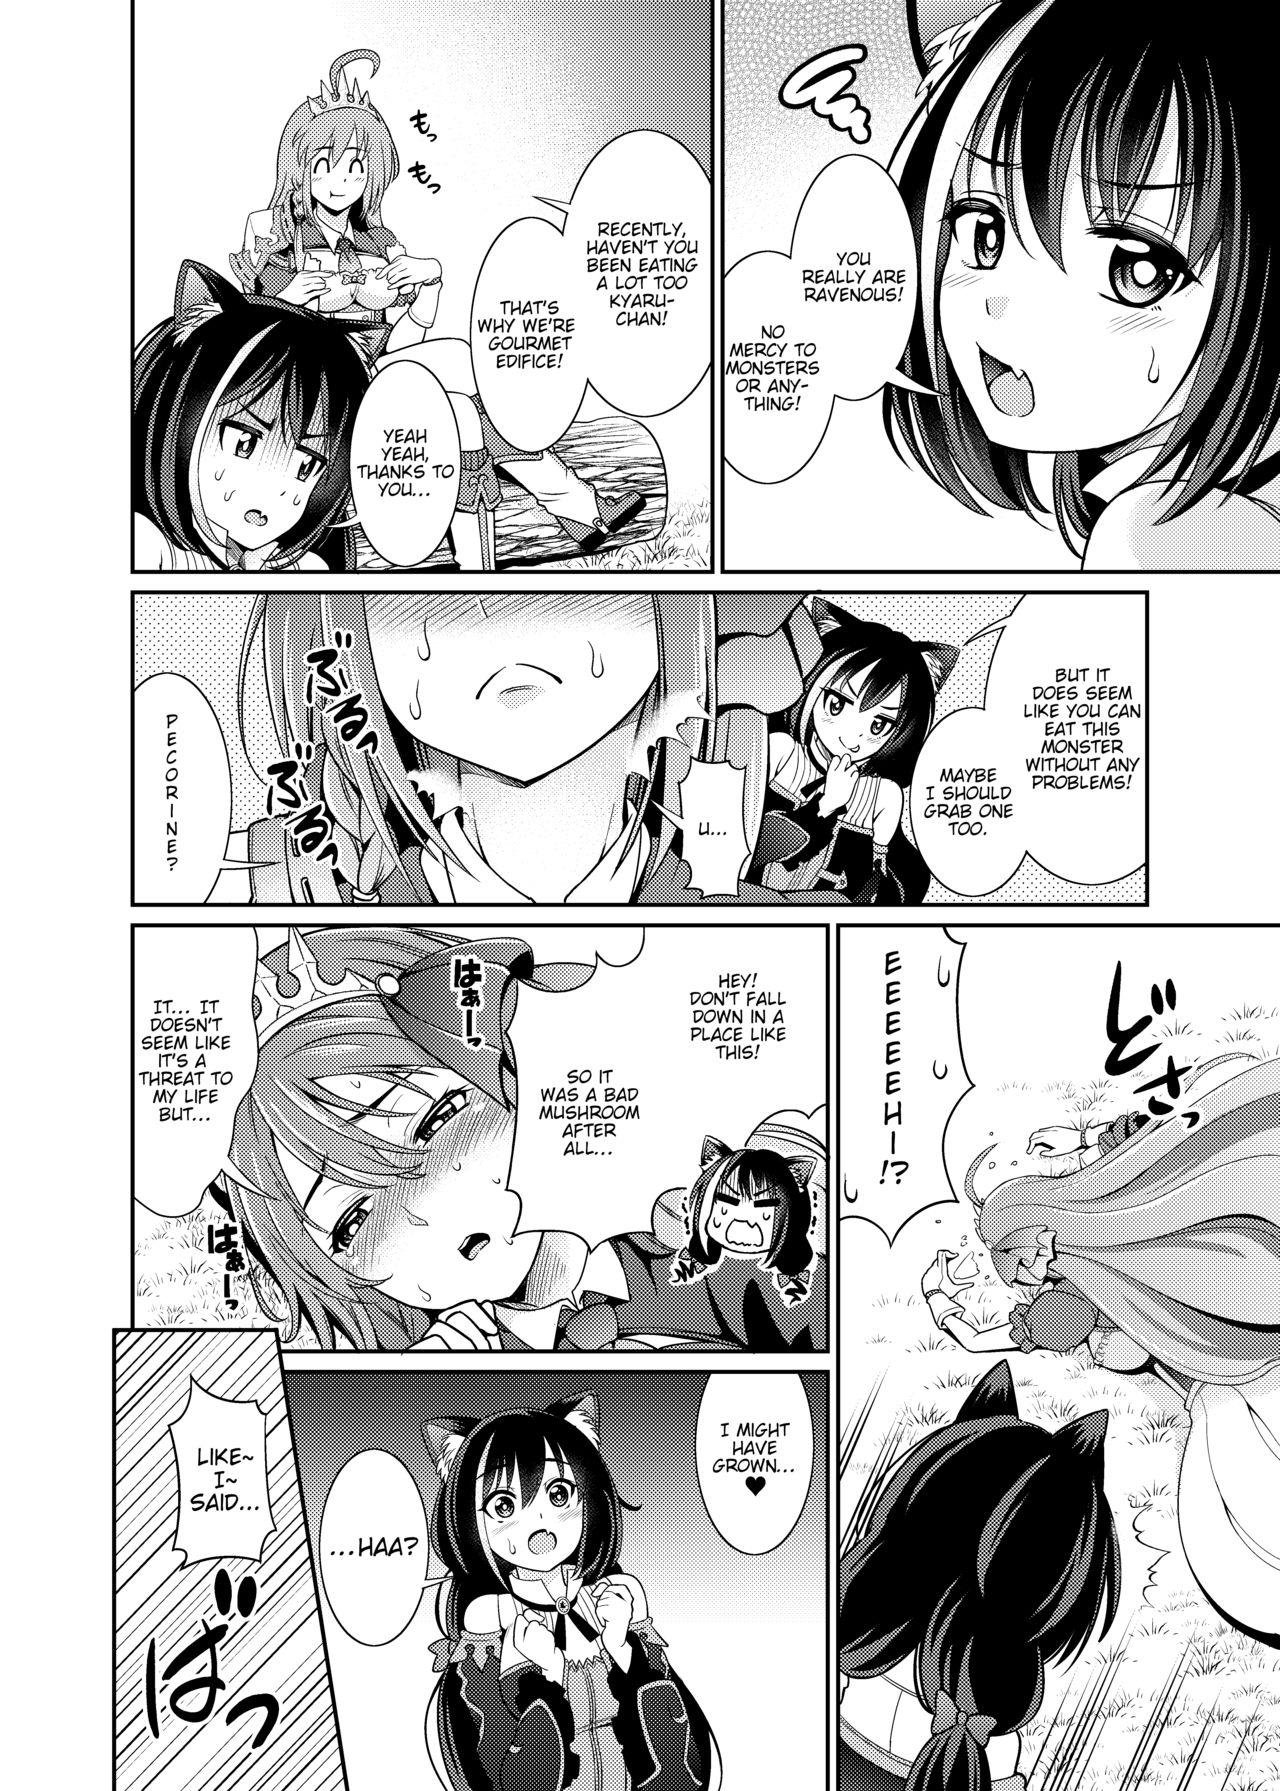 Machine Mamono nante Taberu kara... Ochinchin ga Haechau no yo!! - Princess connect Transsexual - Page 5